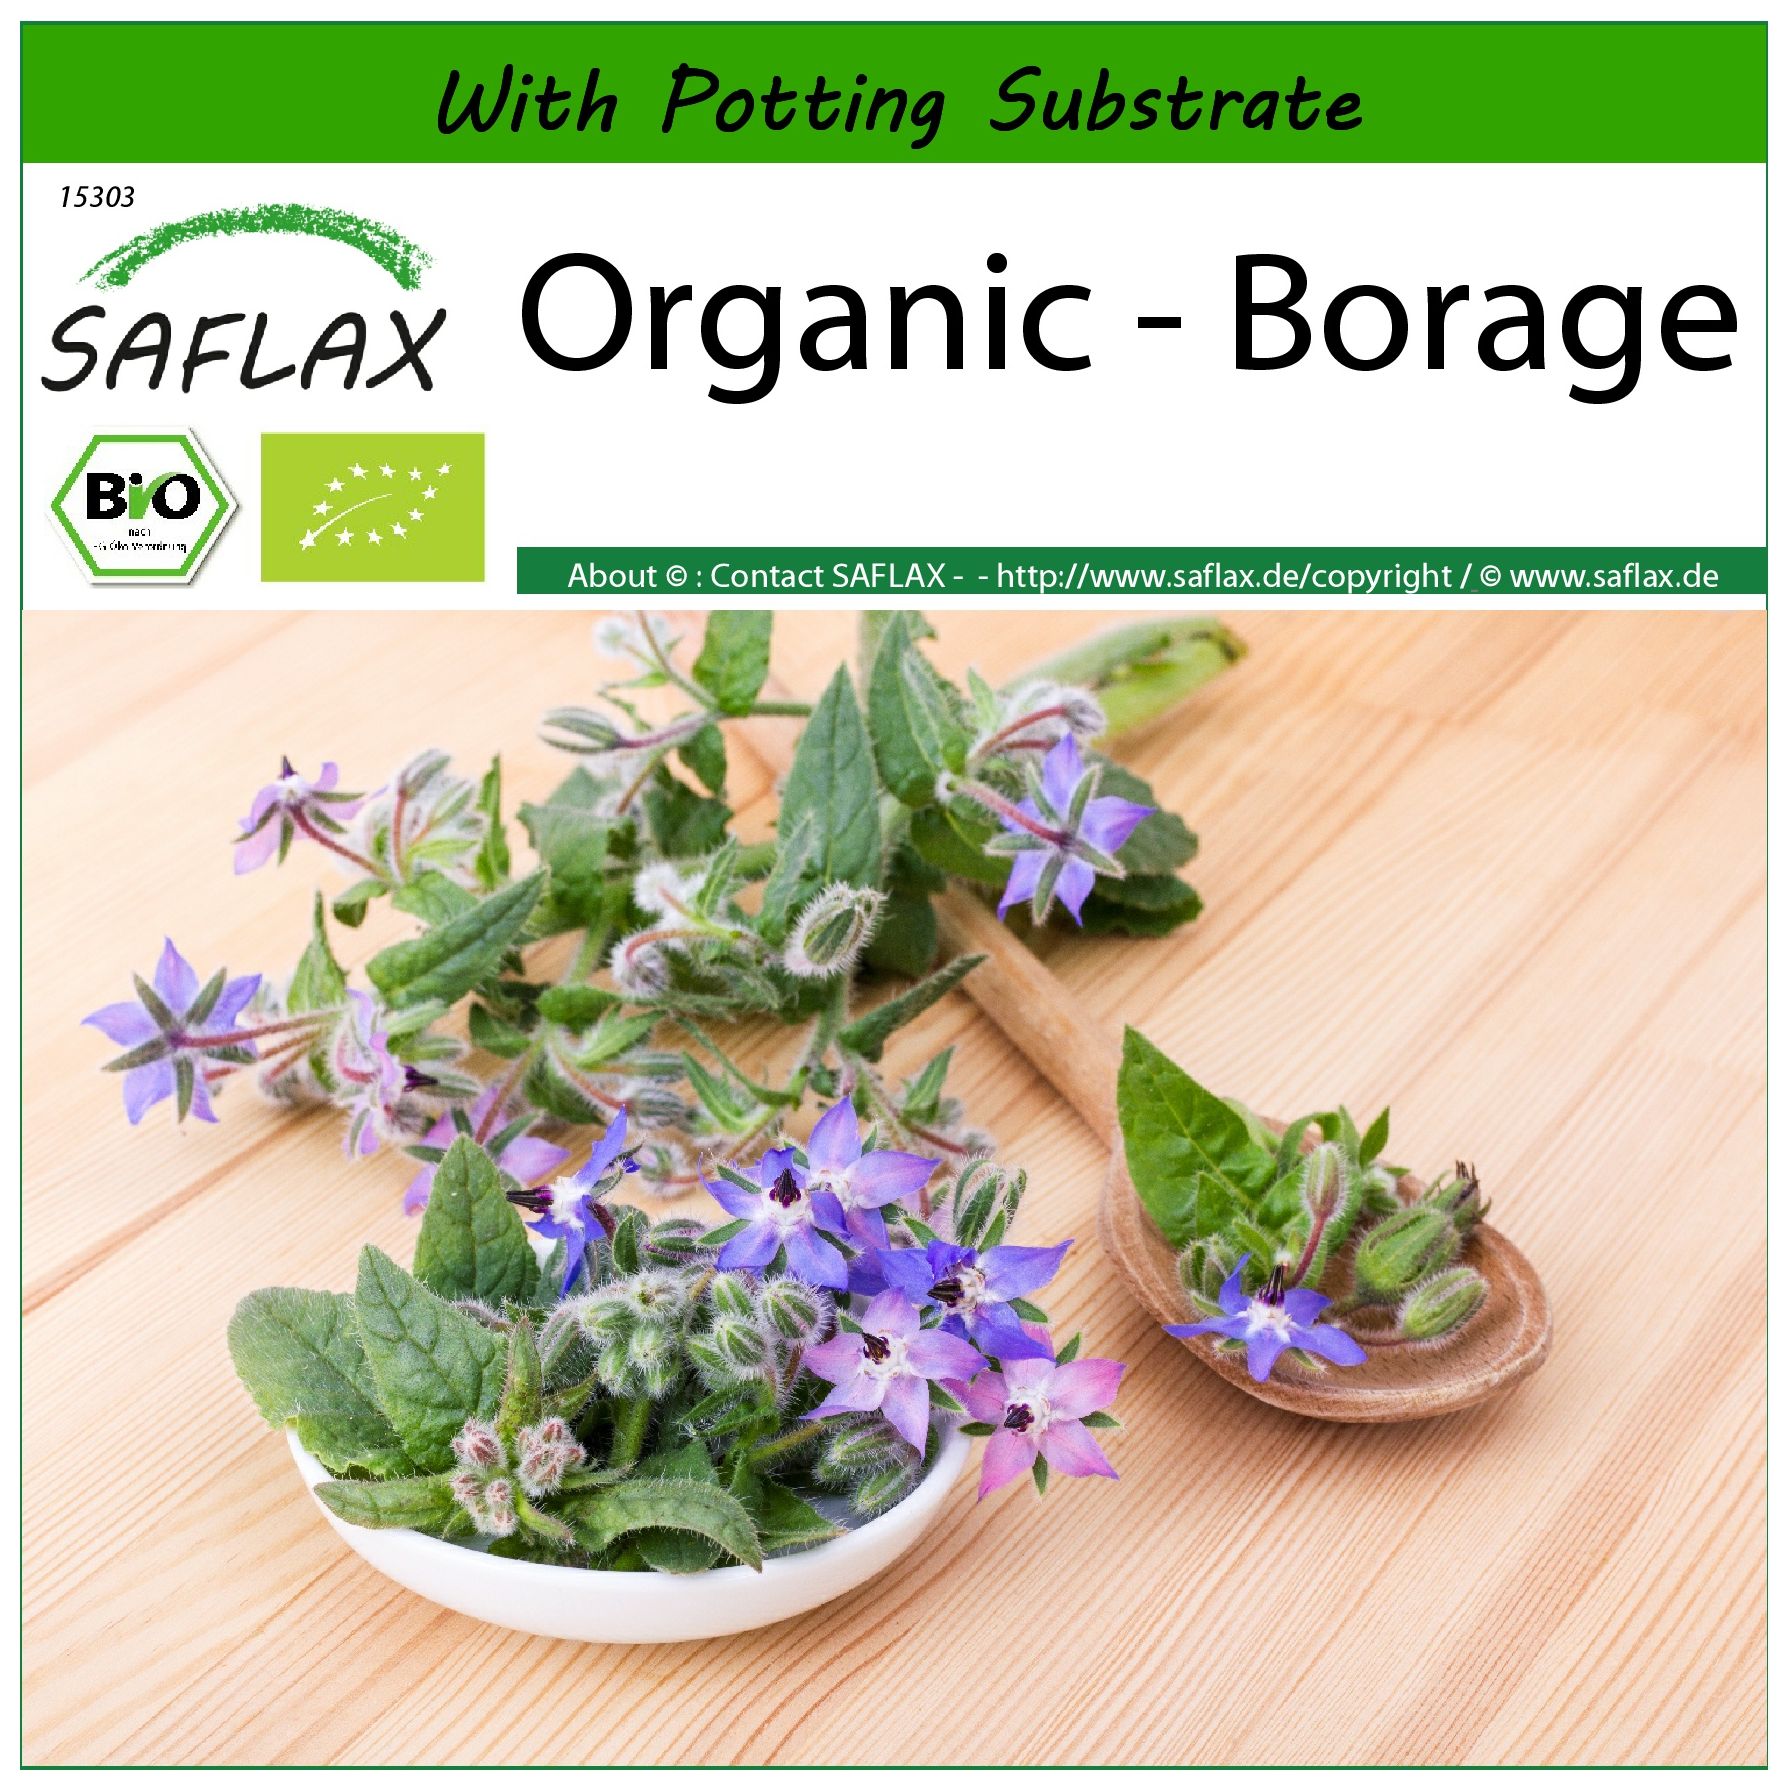 SAFLAX - Organic - Borage - 40 seeds - With soil - Borago